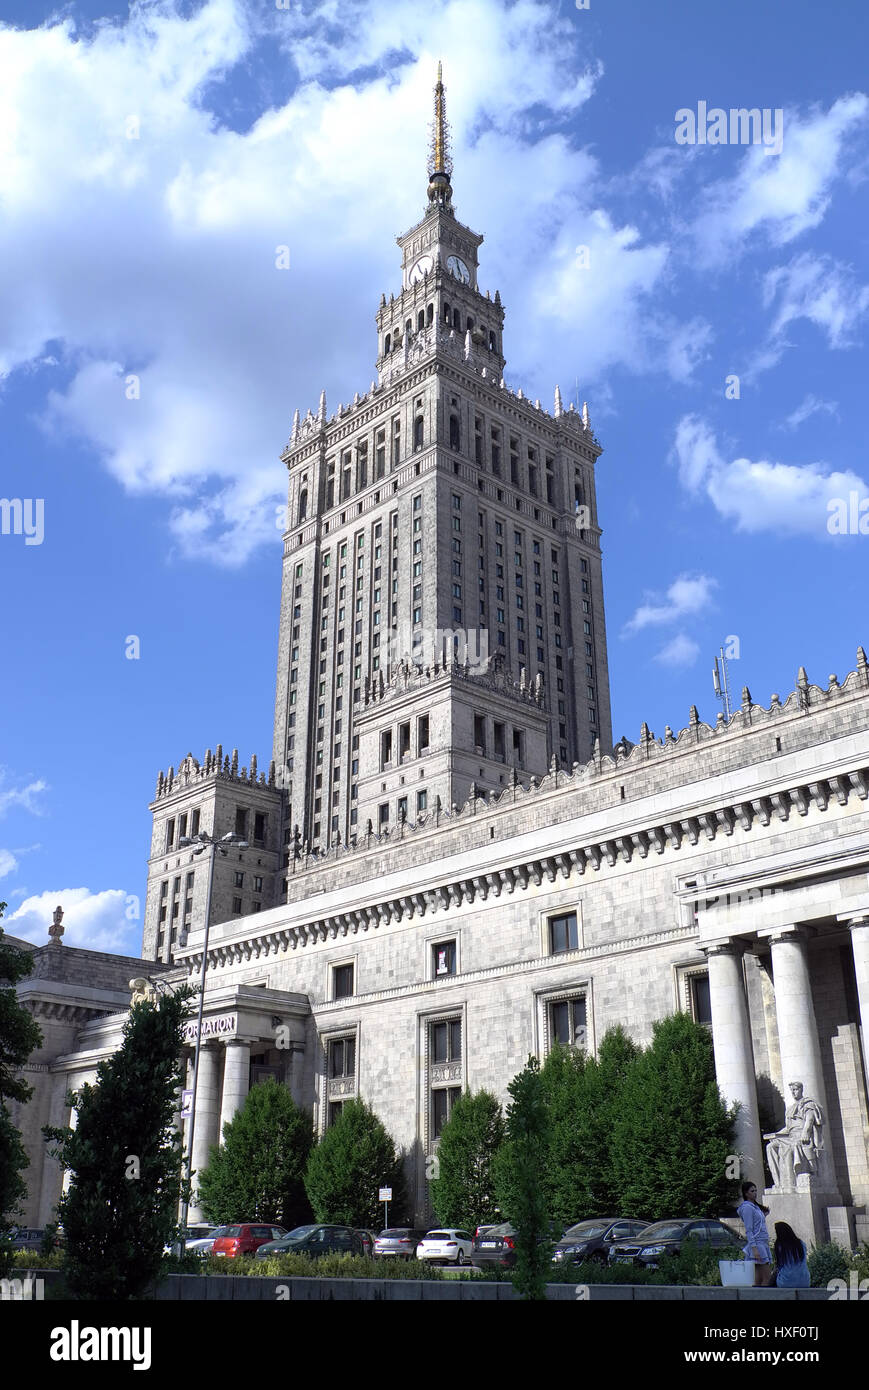 Der Palast der Kultur und Wissenschaft ist das höchste Gebäude in Polen und wurde als ein Geschenk aus der Sowjetunion an das polnische Volk konzipiert. Die landma Stockfoto